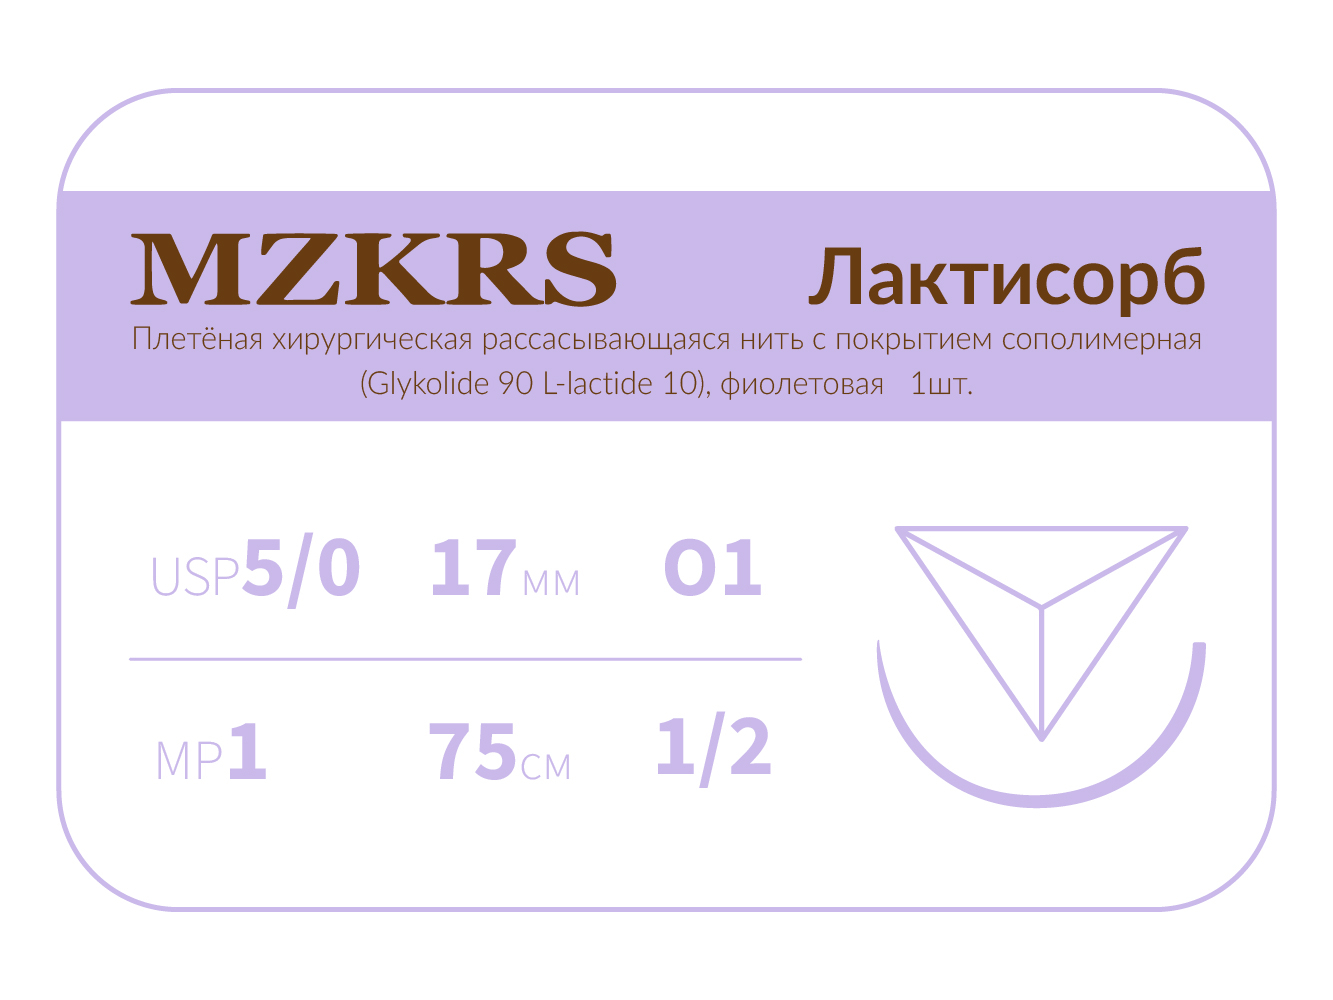 1712О1 Premium-5/0 (1)75 ПГЛ ЛАКТИСОРБ хирургическая нить сополимерная, обратно-режущая игла, MZKRS (Россия)